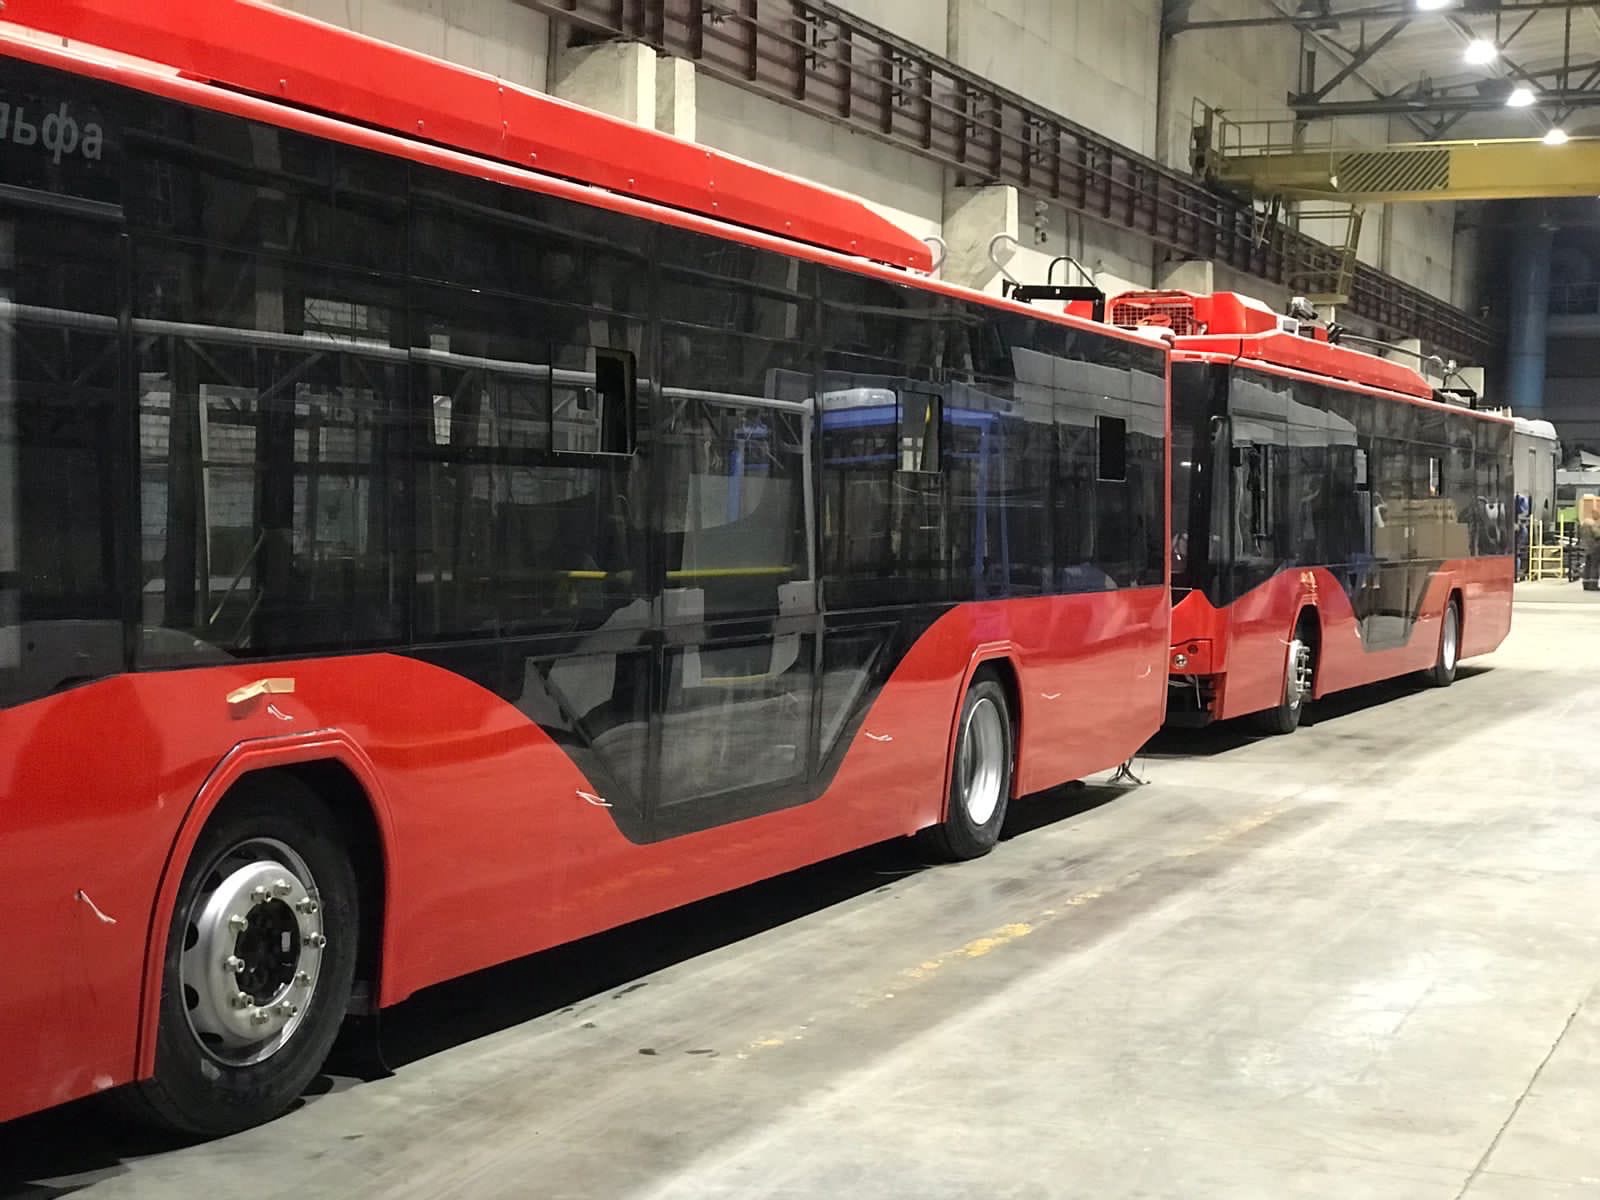 Прибытие новых красных троллейбусов в Брянск 1 июля оказалось под вопросом